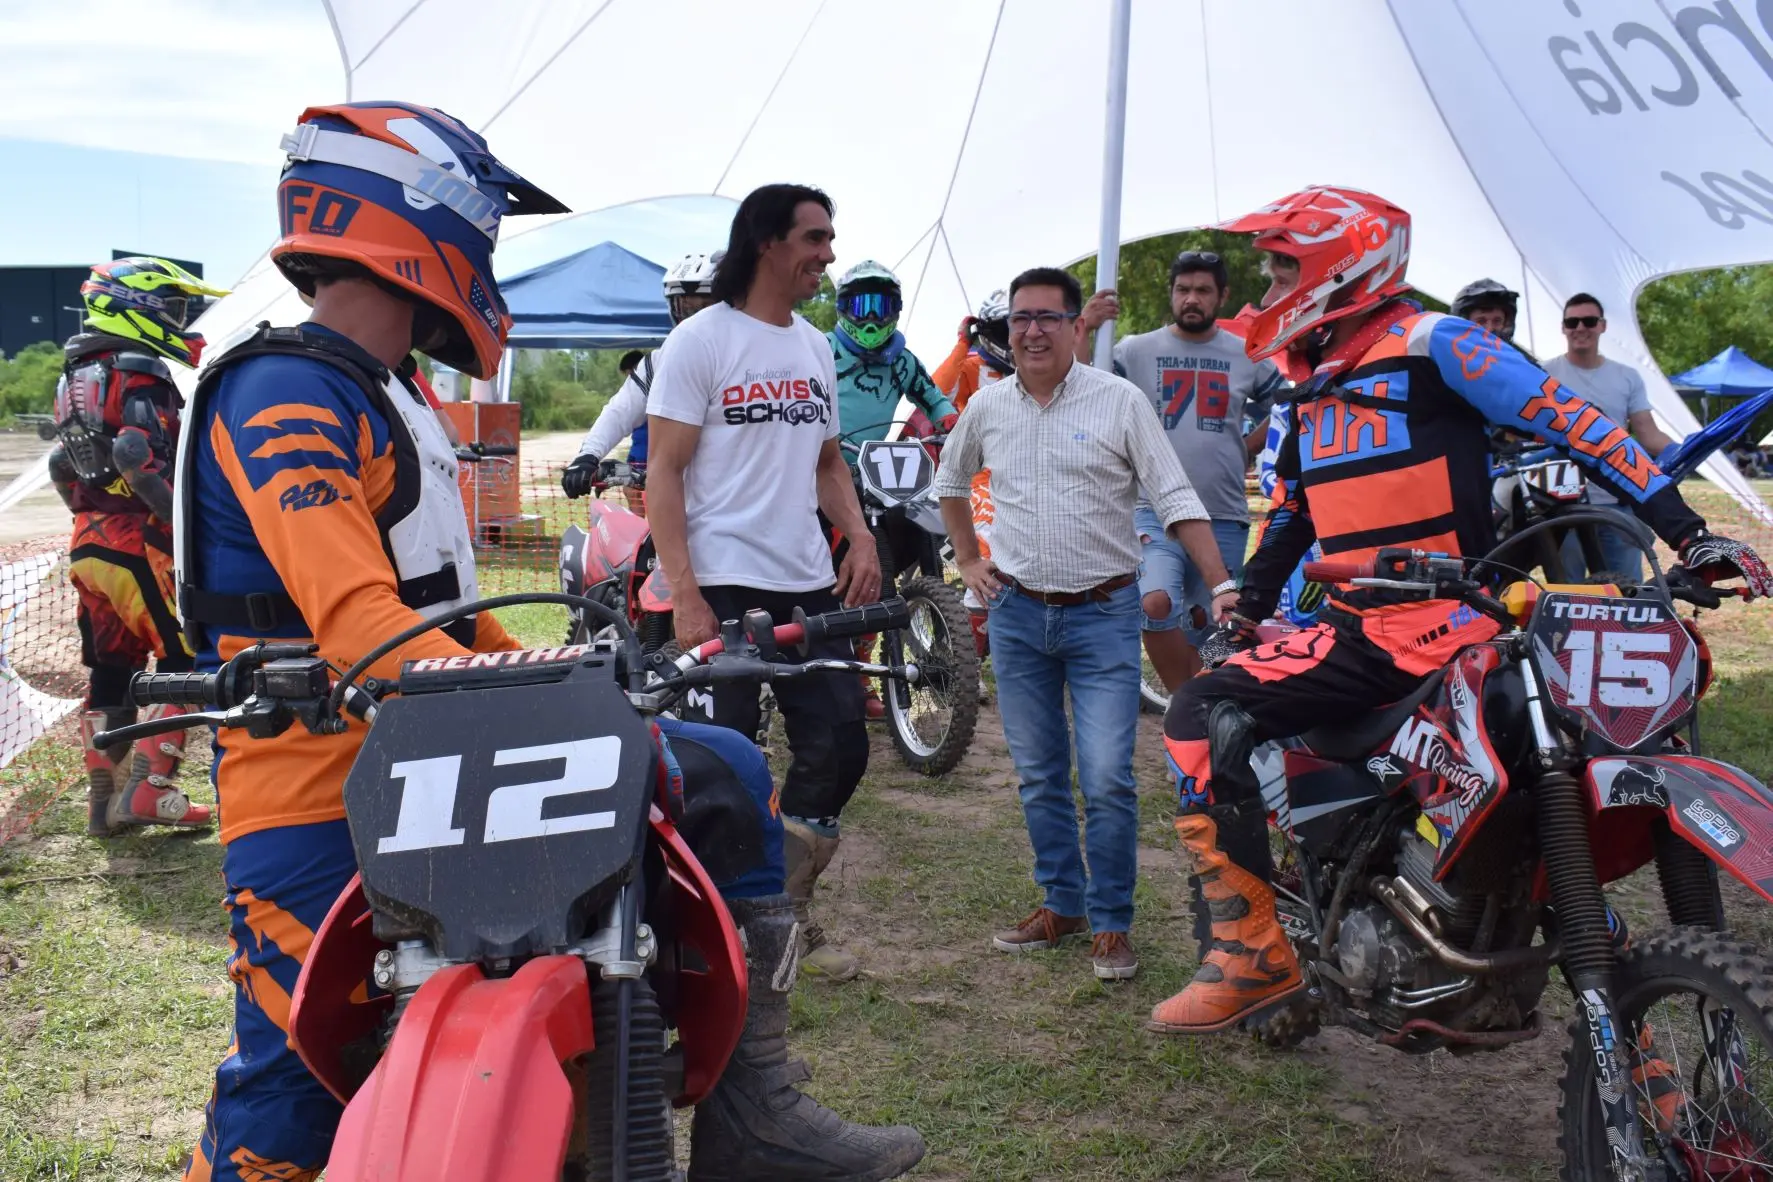 carreras de motos en resistencia chaco - Qué carreras hay para estudiar en Chaco